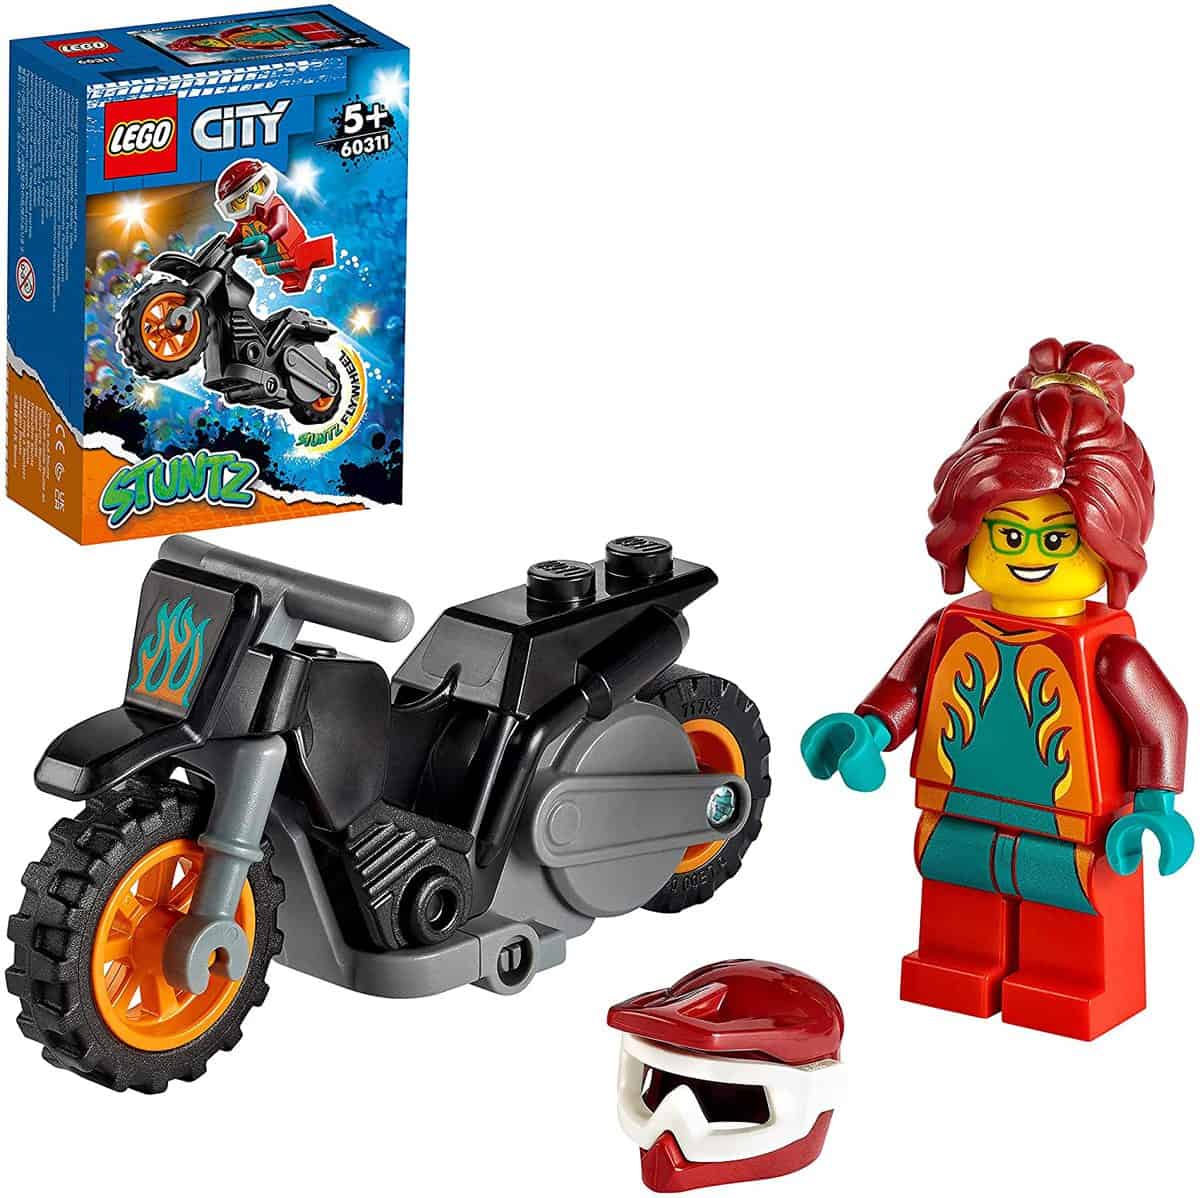 LEGO 60311 City Stuntz Feuer-Stuntbike - für 5,35 € [Prime] statt 7,99 €